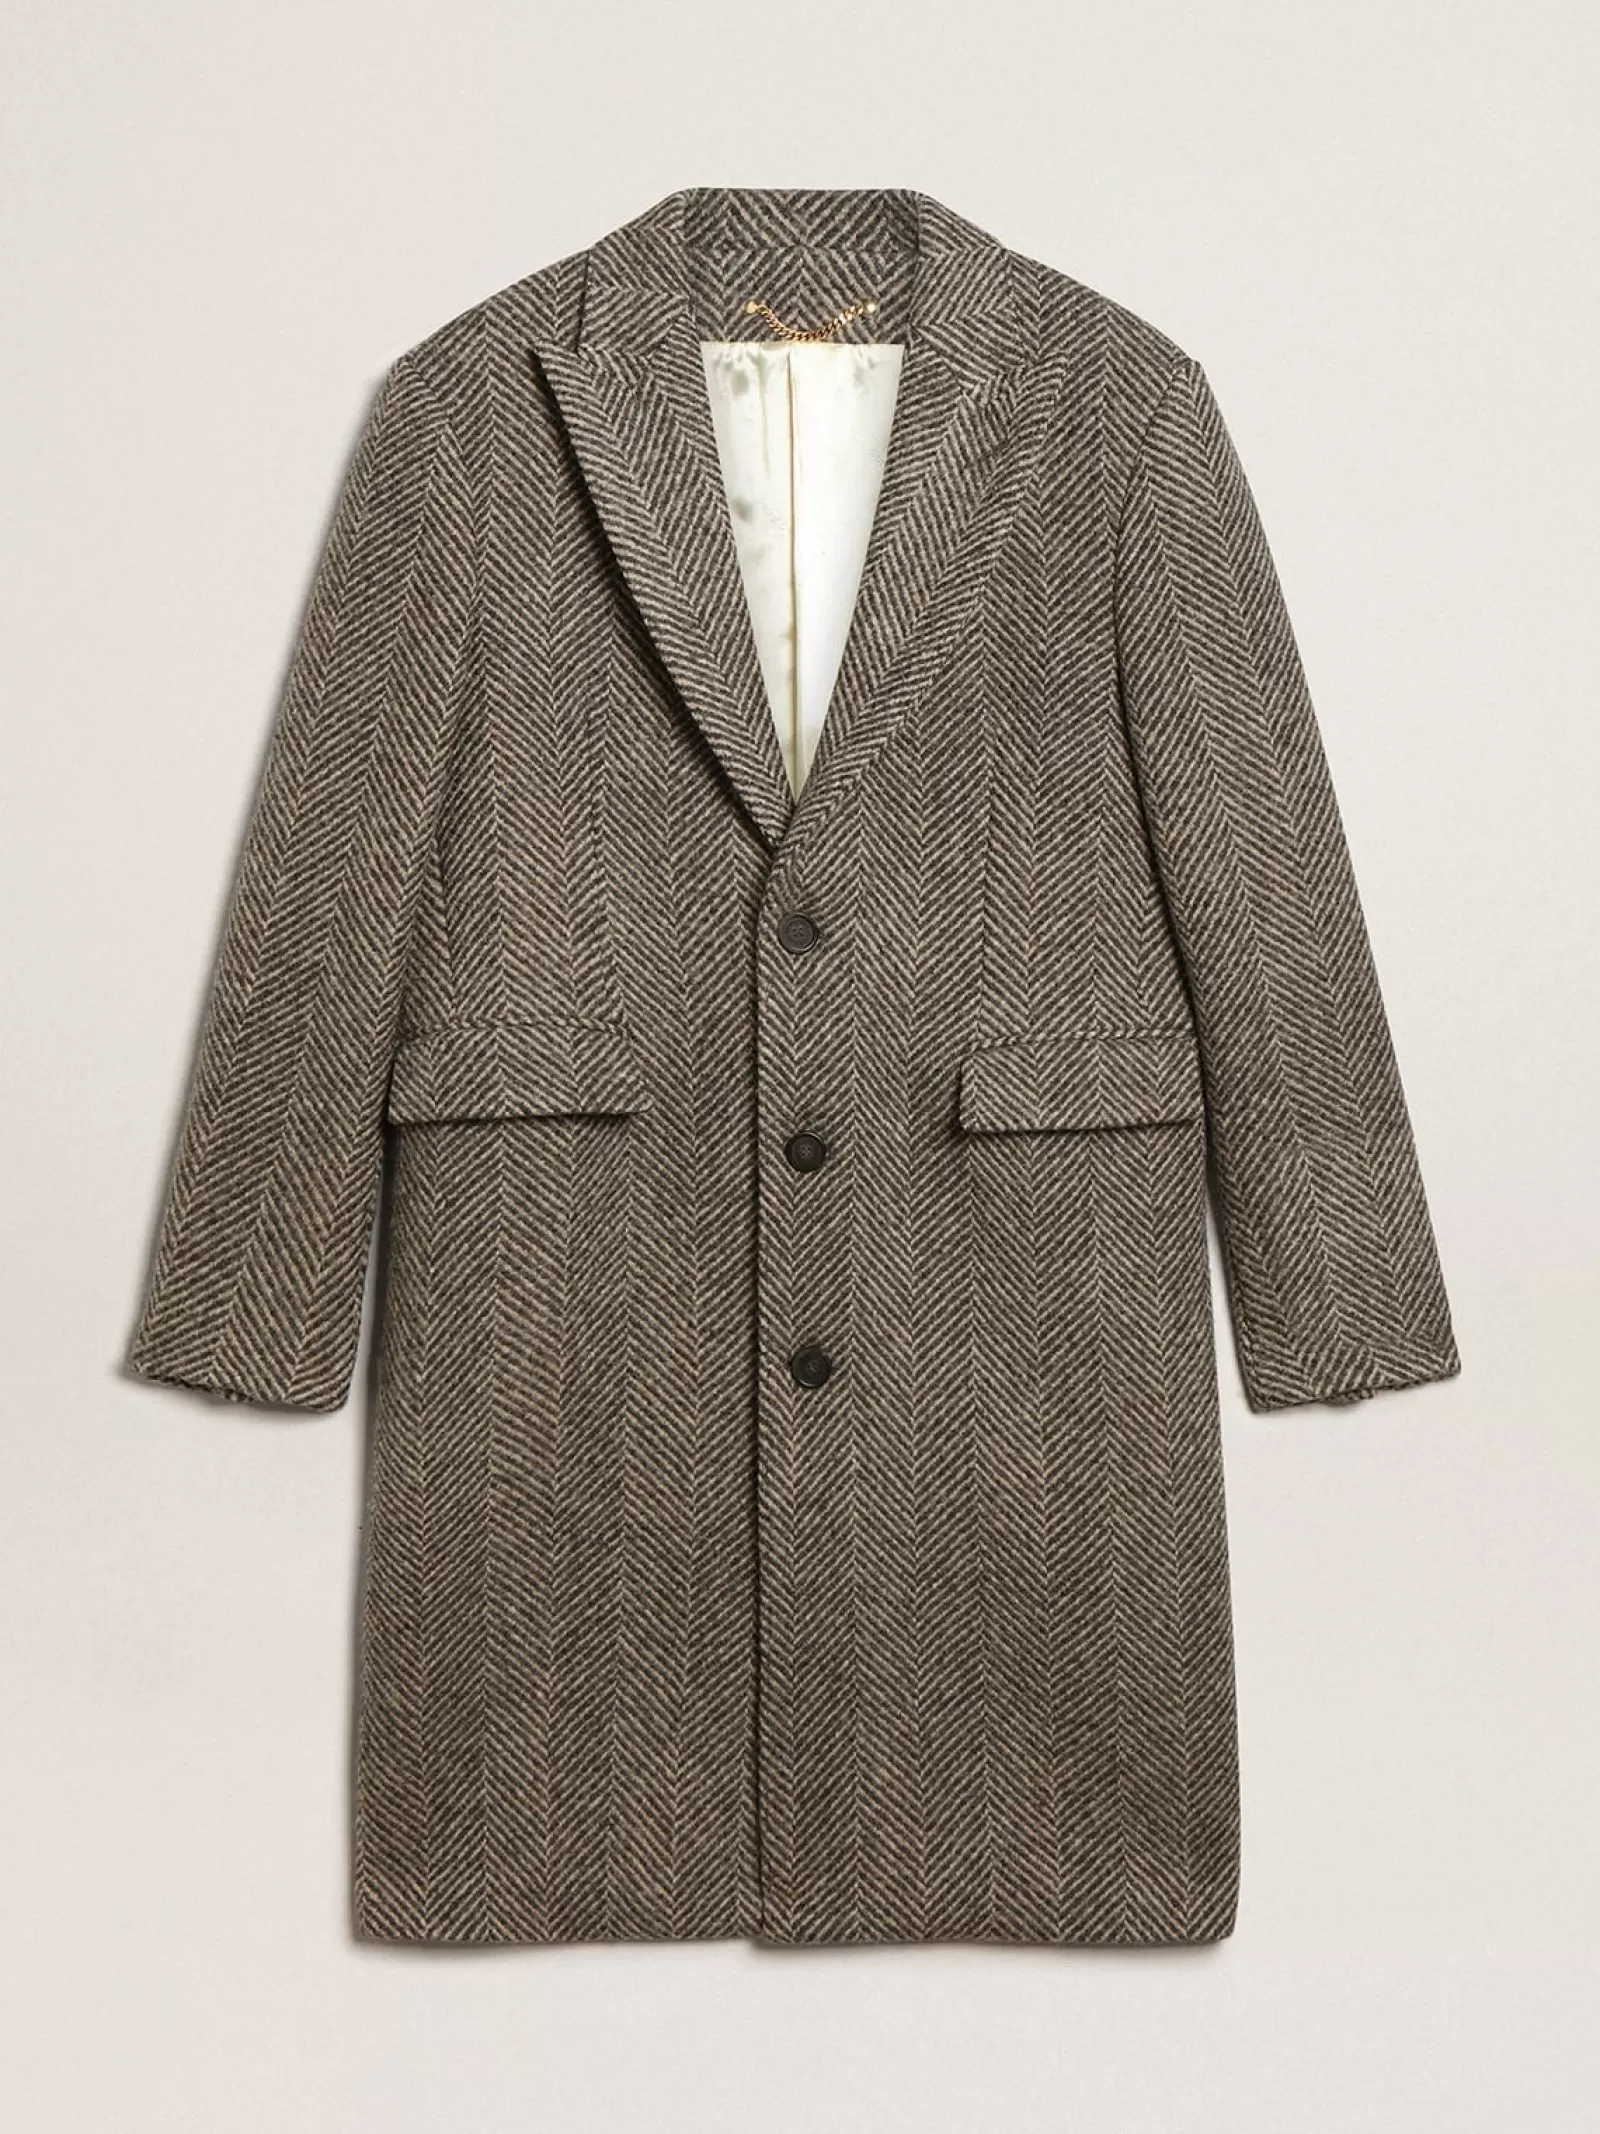 Manteau droit homme en laine avec trame à chevrons beige et gris | Golden Goose Best